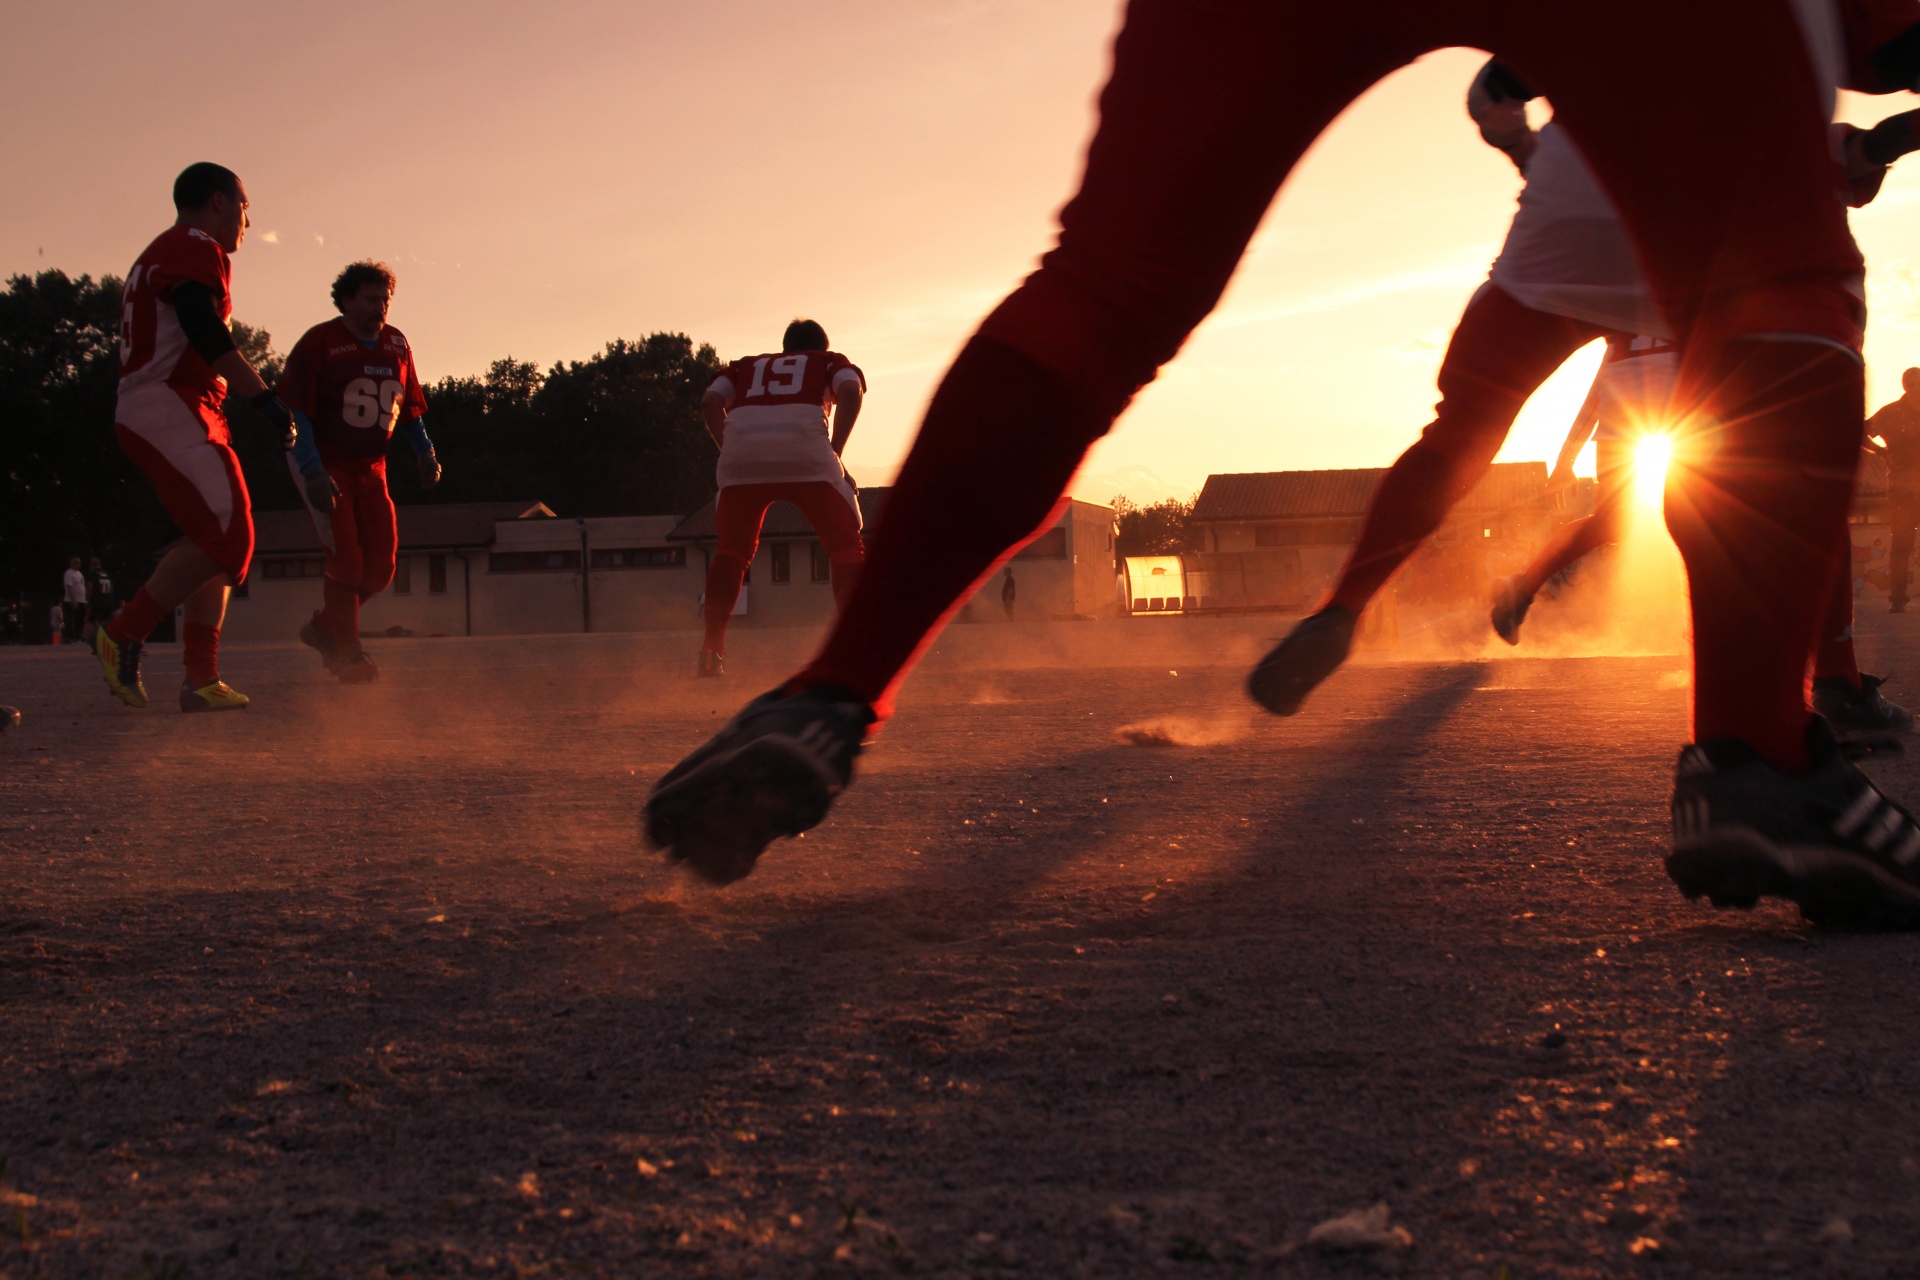 Men playing sport at sunset